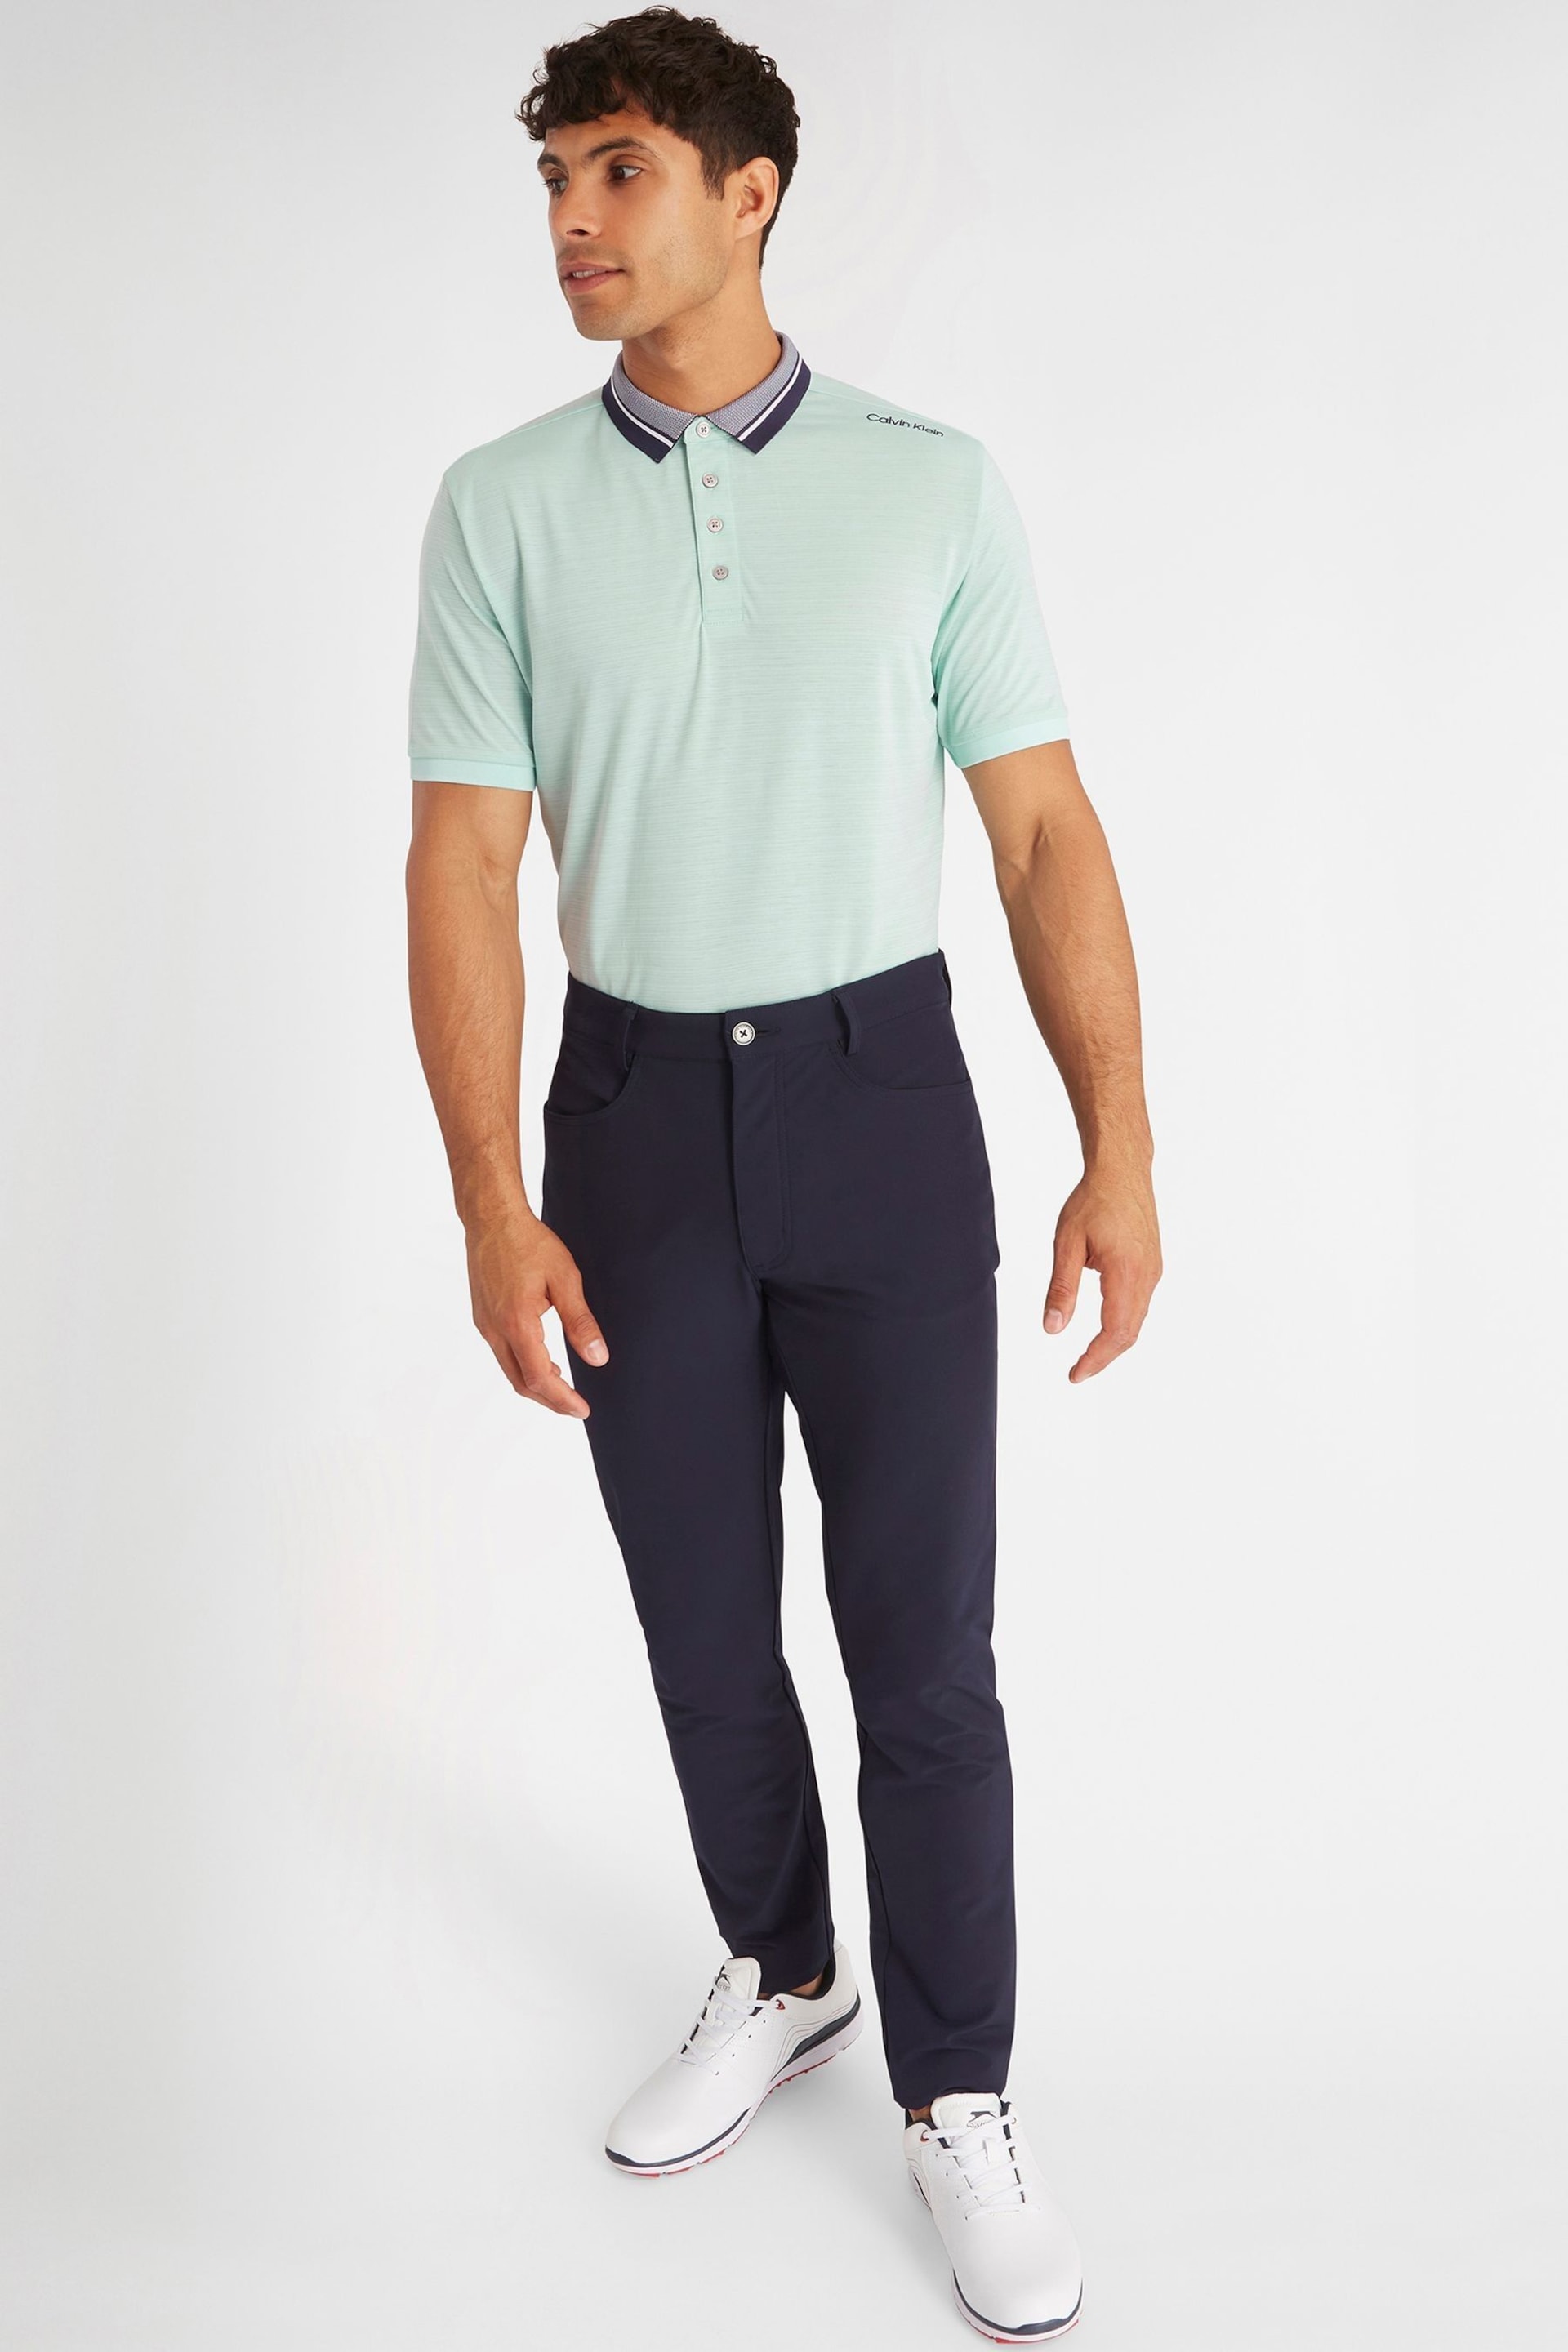 Calvin Klein Golf Navy Parramore Polo Shirt - Image 7 of 12